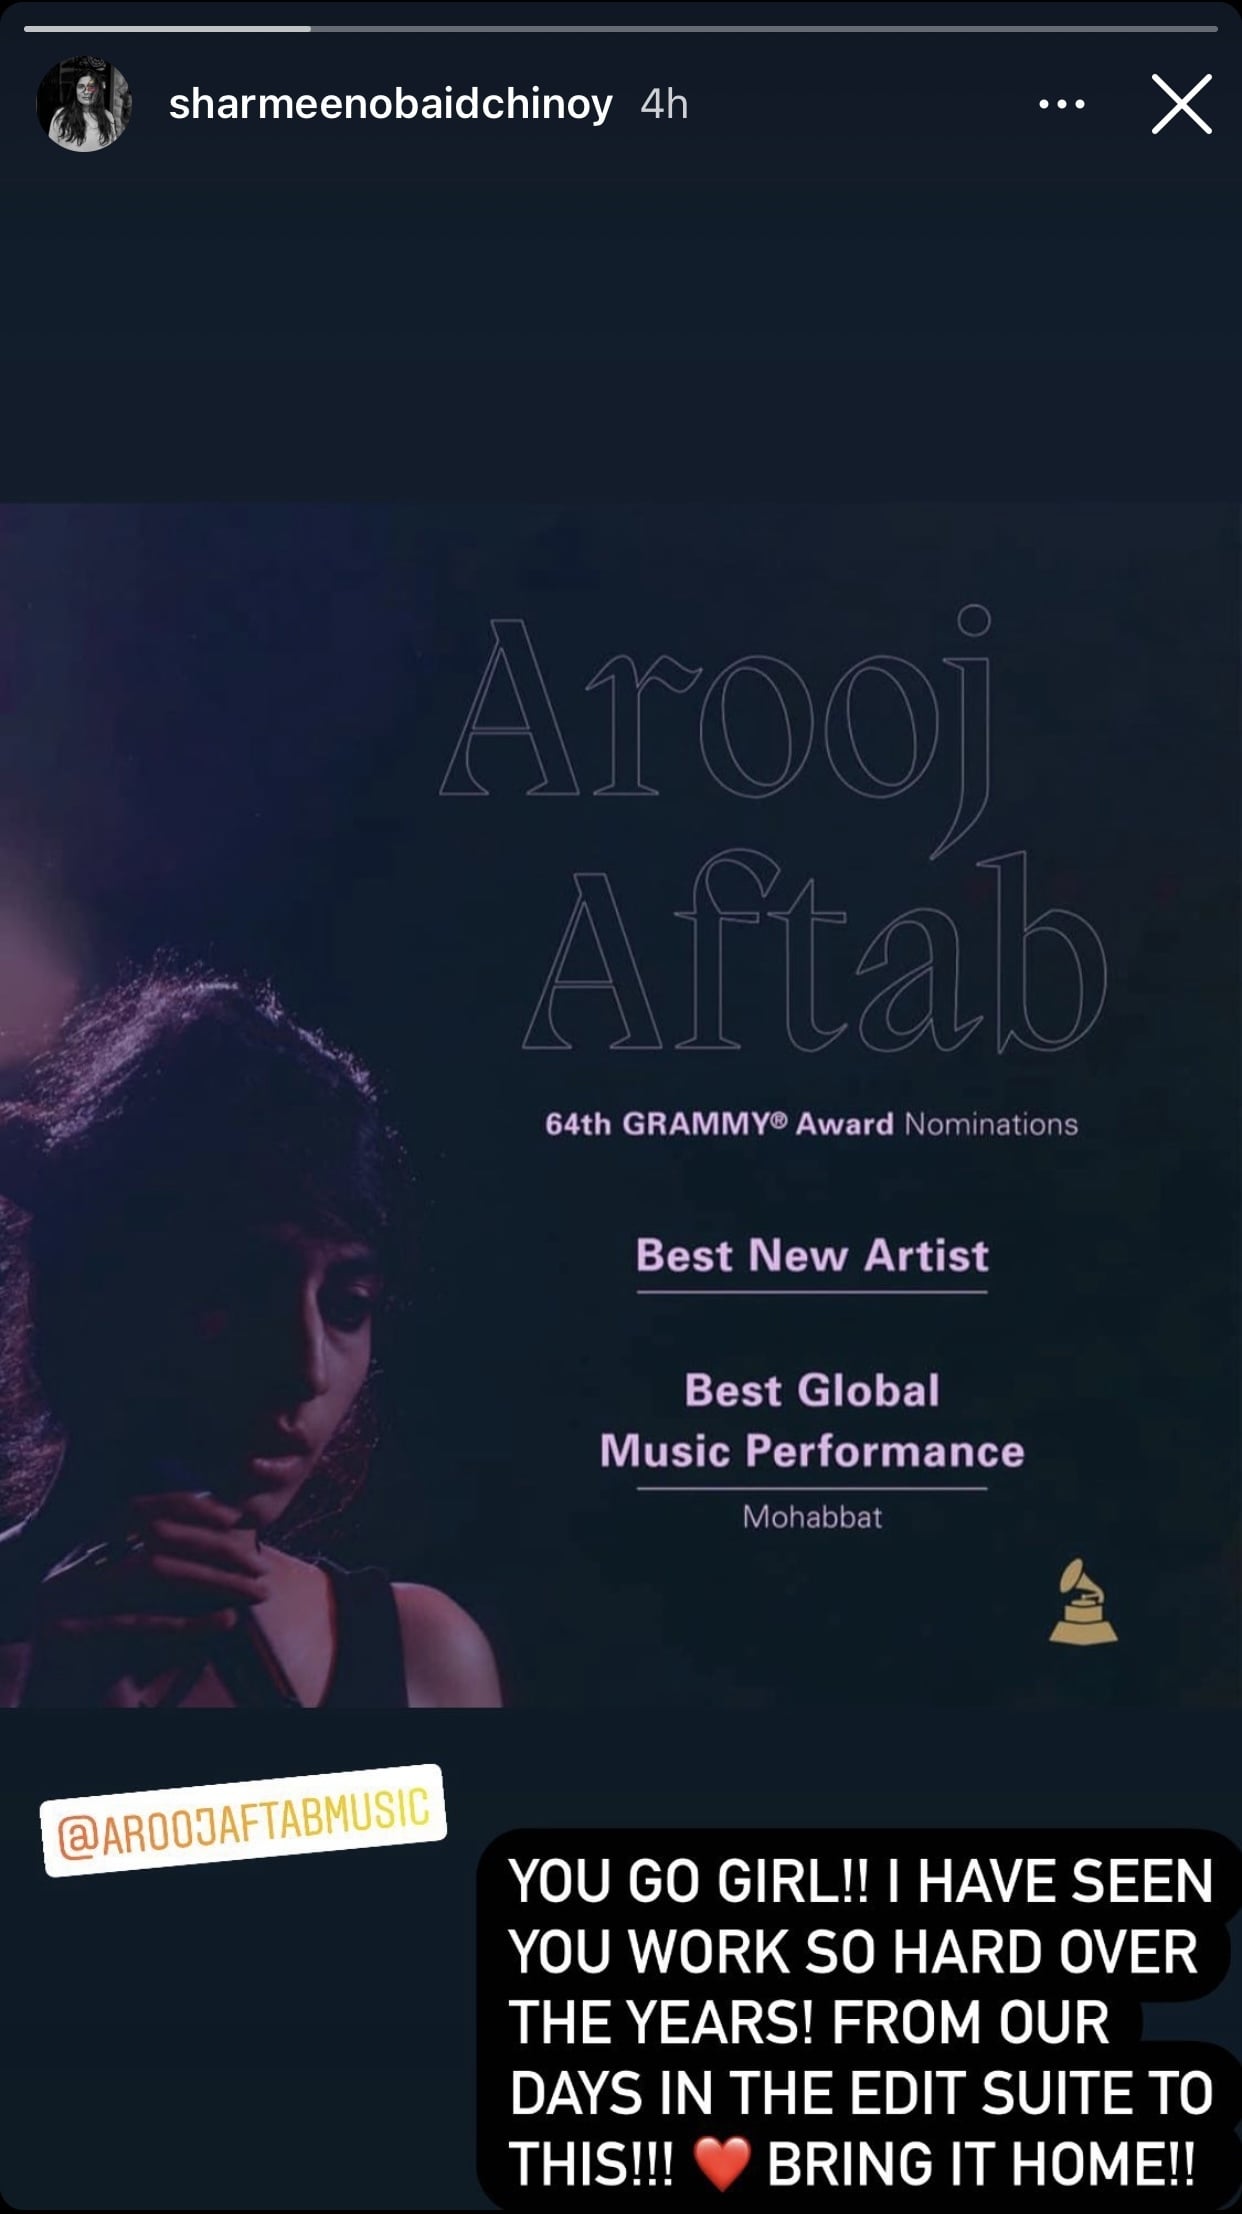 Celebrities praise Arooj Aftab after Grammy nomination 